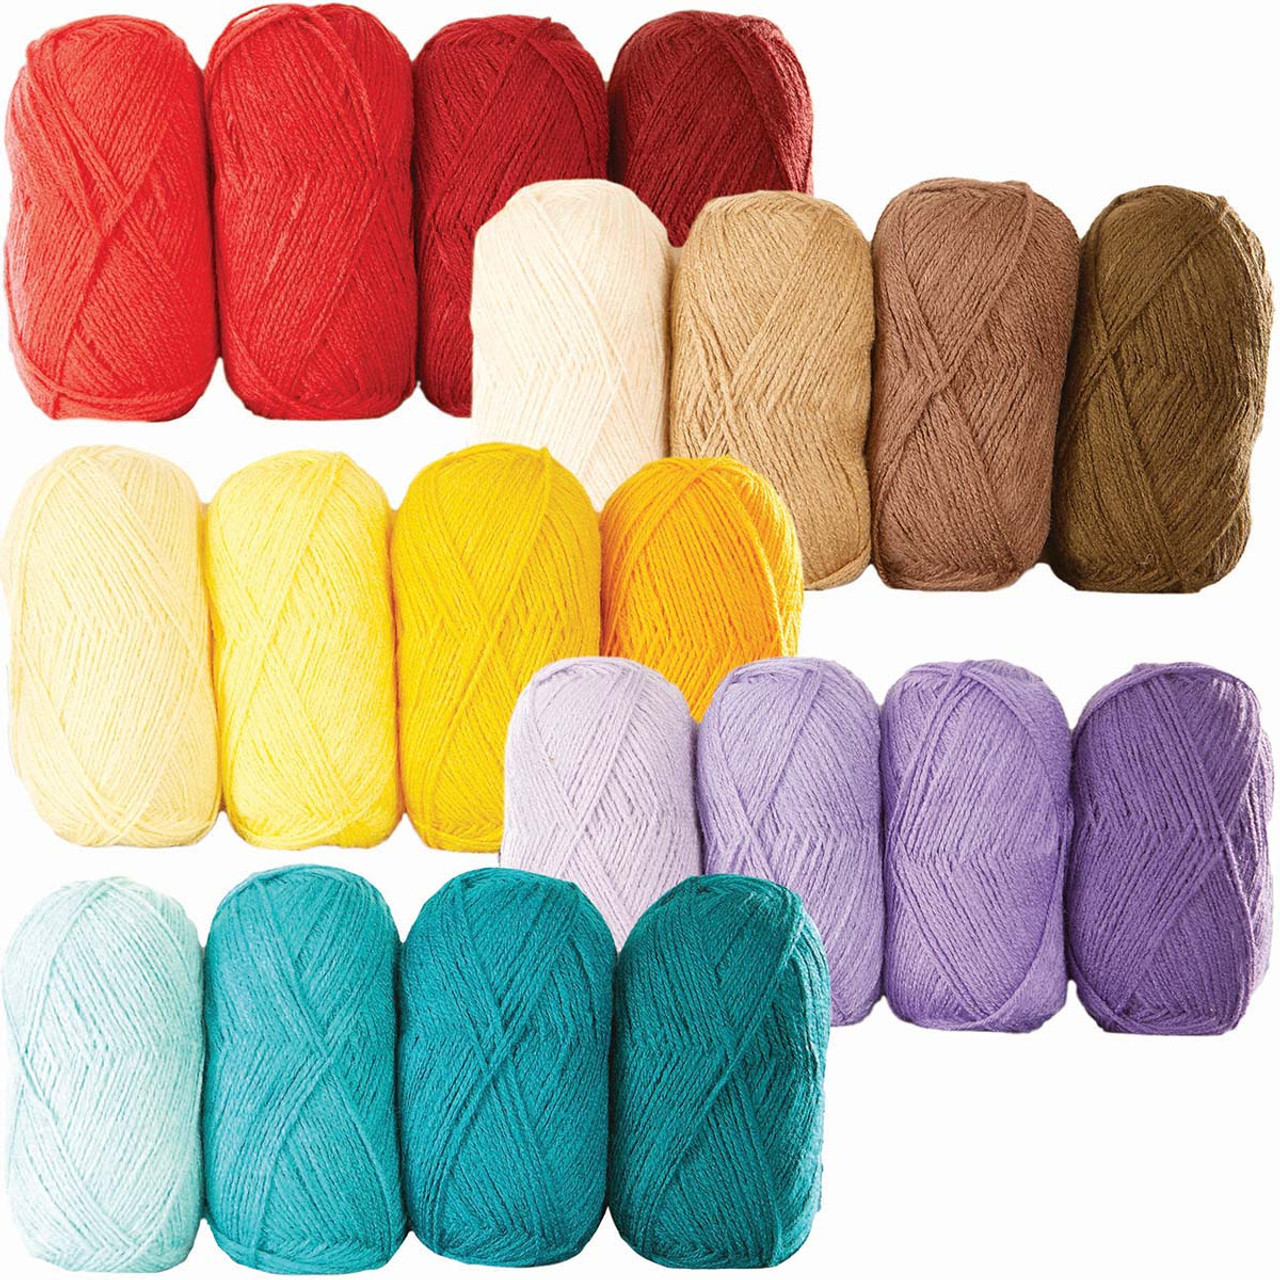 Herrschners Afghan Yarn Gradient Yarn Pack